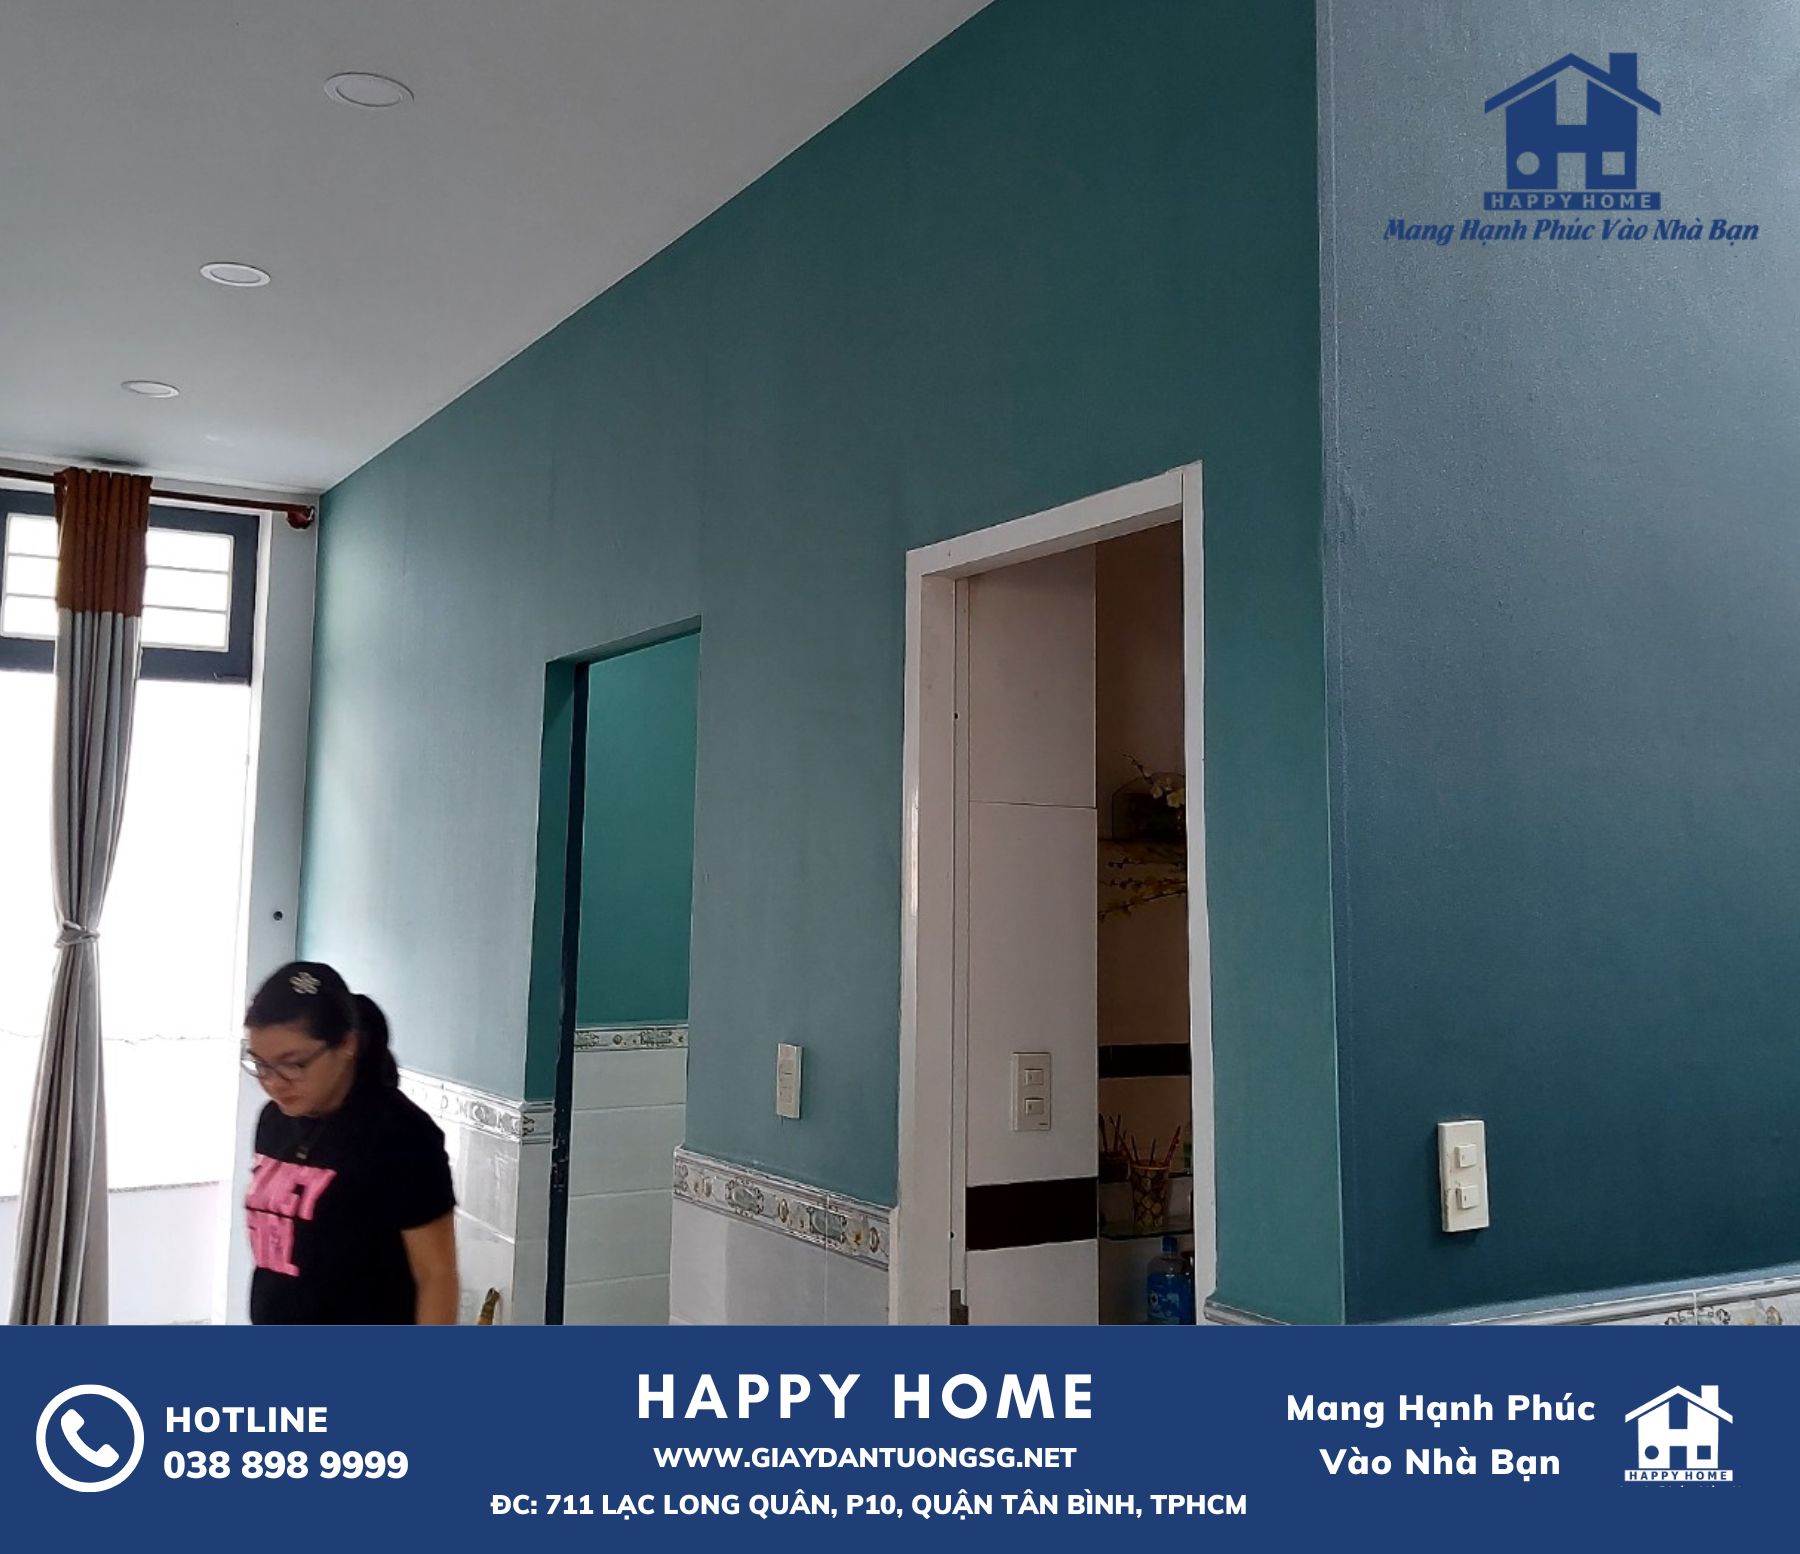 Thi công giấy dán tường Happy Home tại nhà chị Hiền: trải nghiệm và hình ảnh thực tế